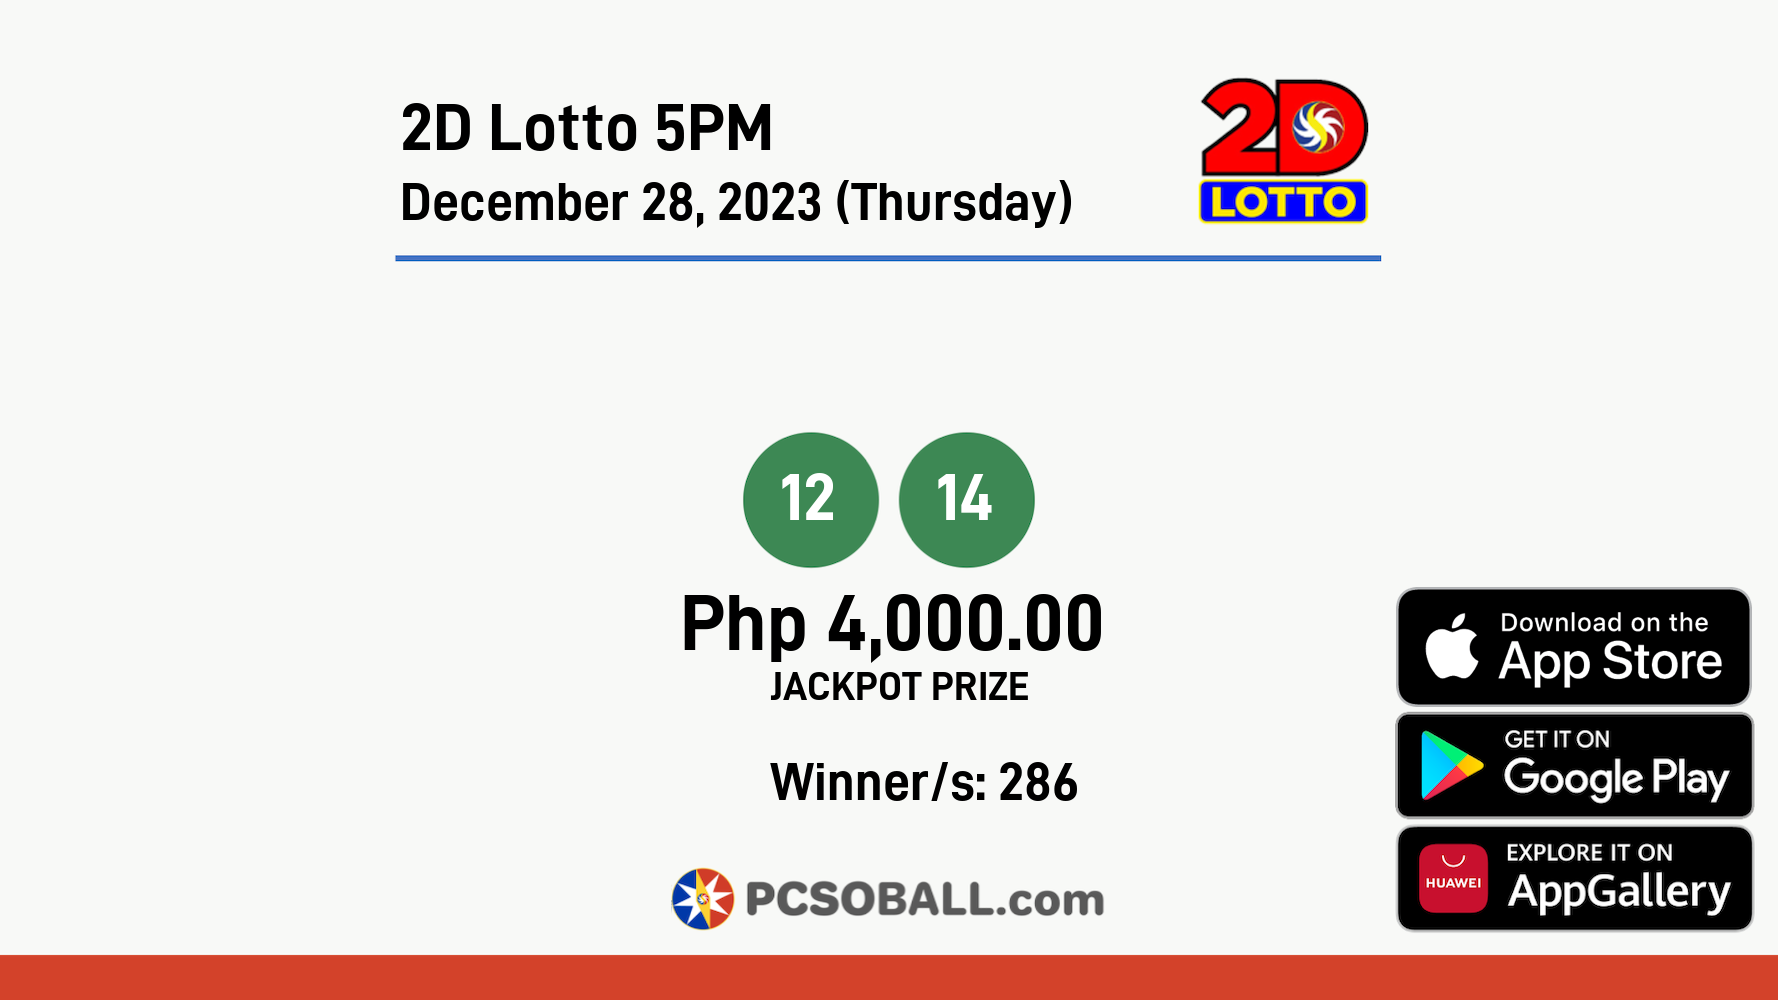 2D Lotto 5PM December 28, 2023 (Thursday) Result